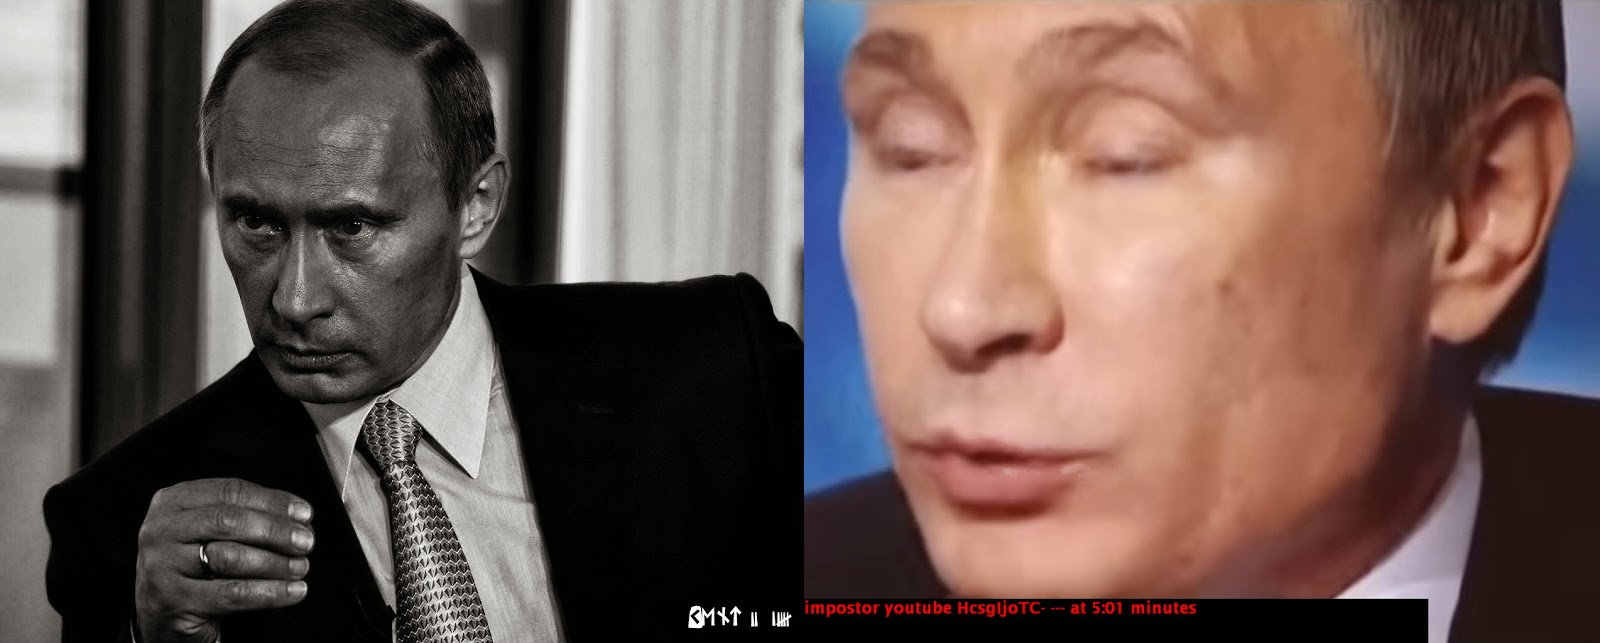 real+Putin+vs+impostor+in+youtube.jpg